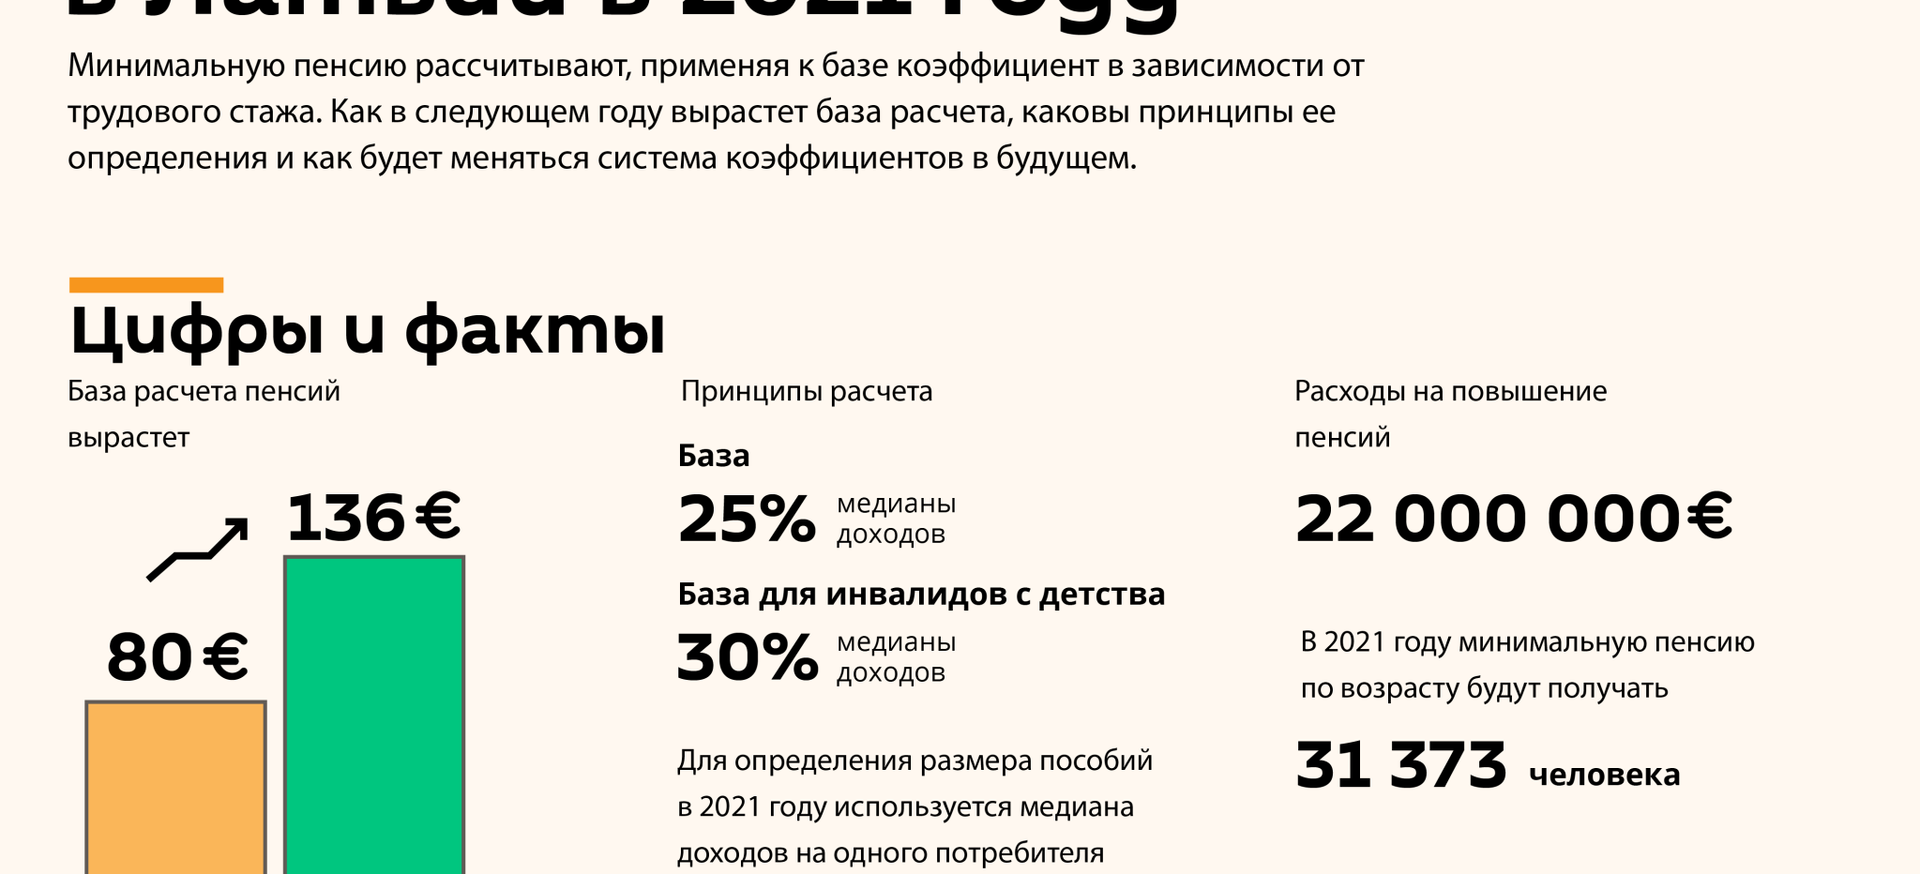 Как изменится расчет минимальной пенсии в Латвии в 2021 году - Sputnik Латвия, 1920, 08.10.2020